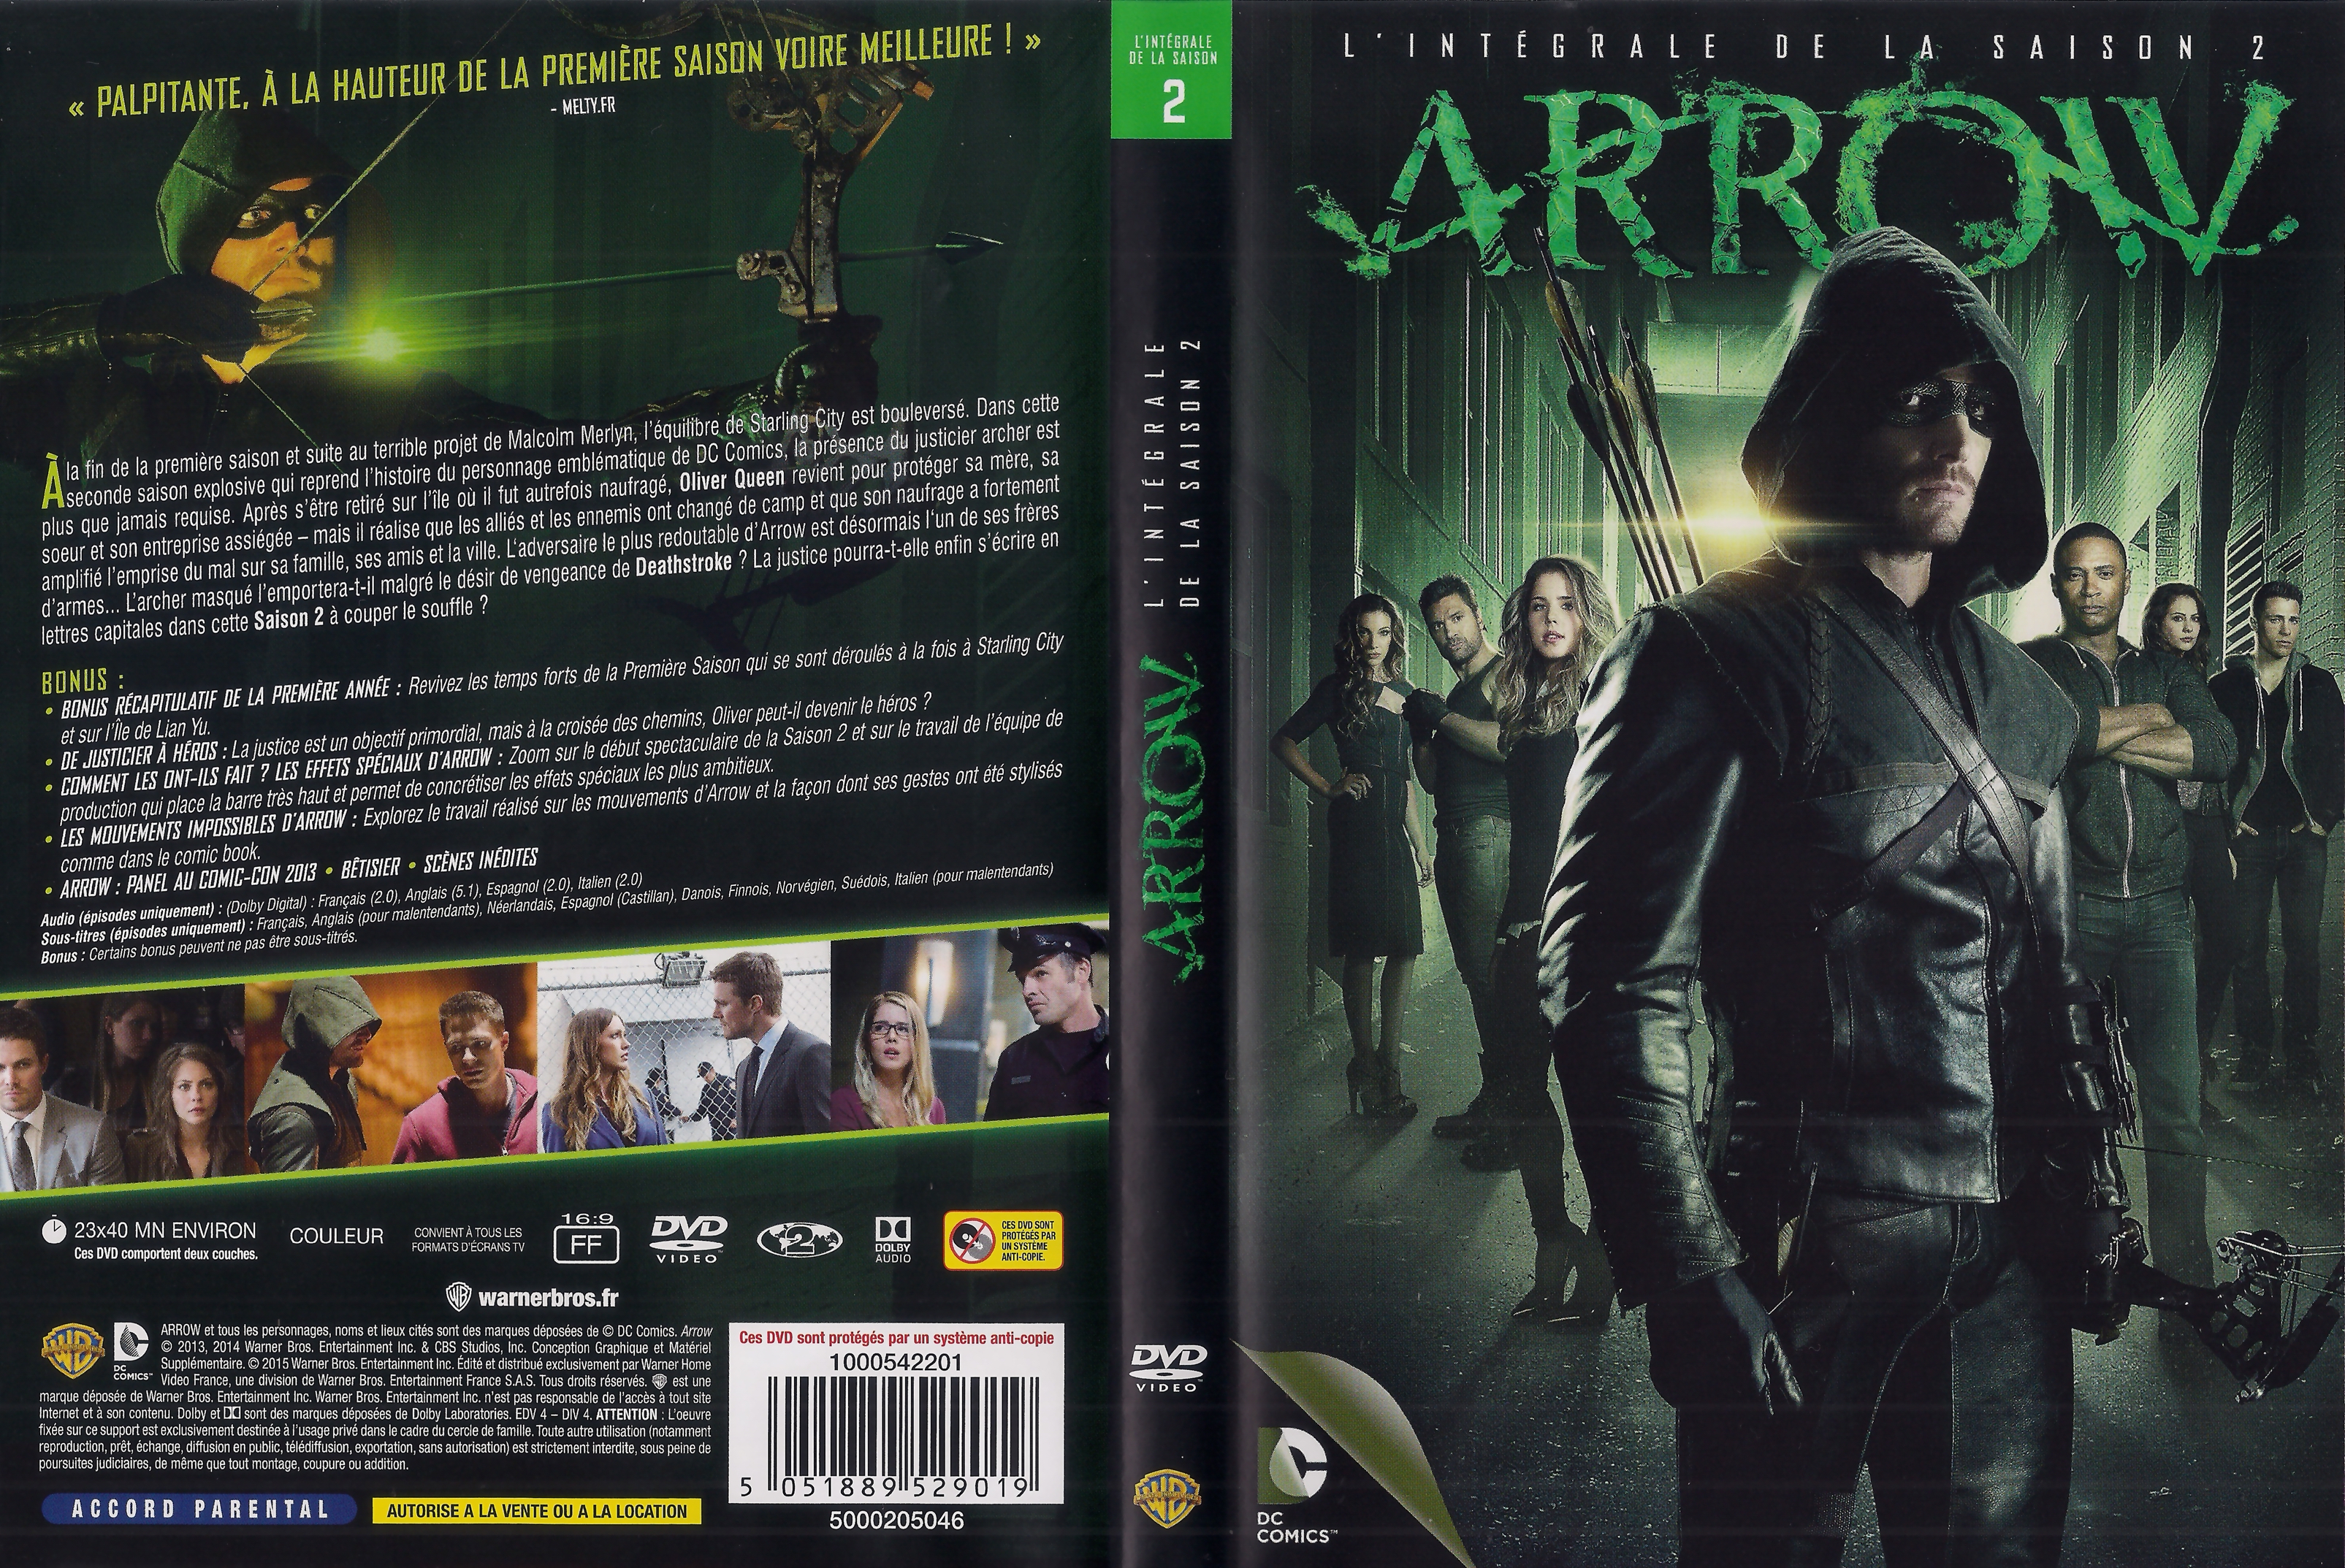 Jaquette DVD Arrow saison 2